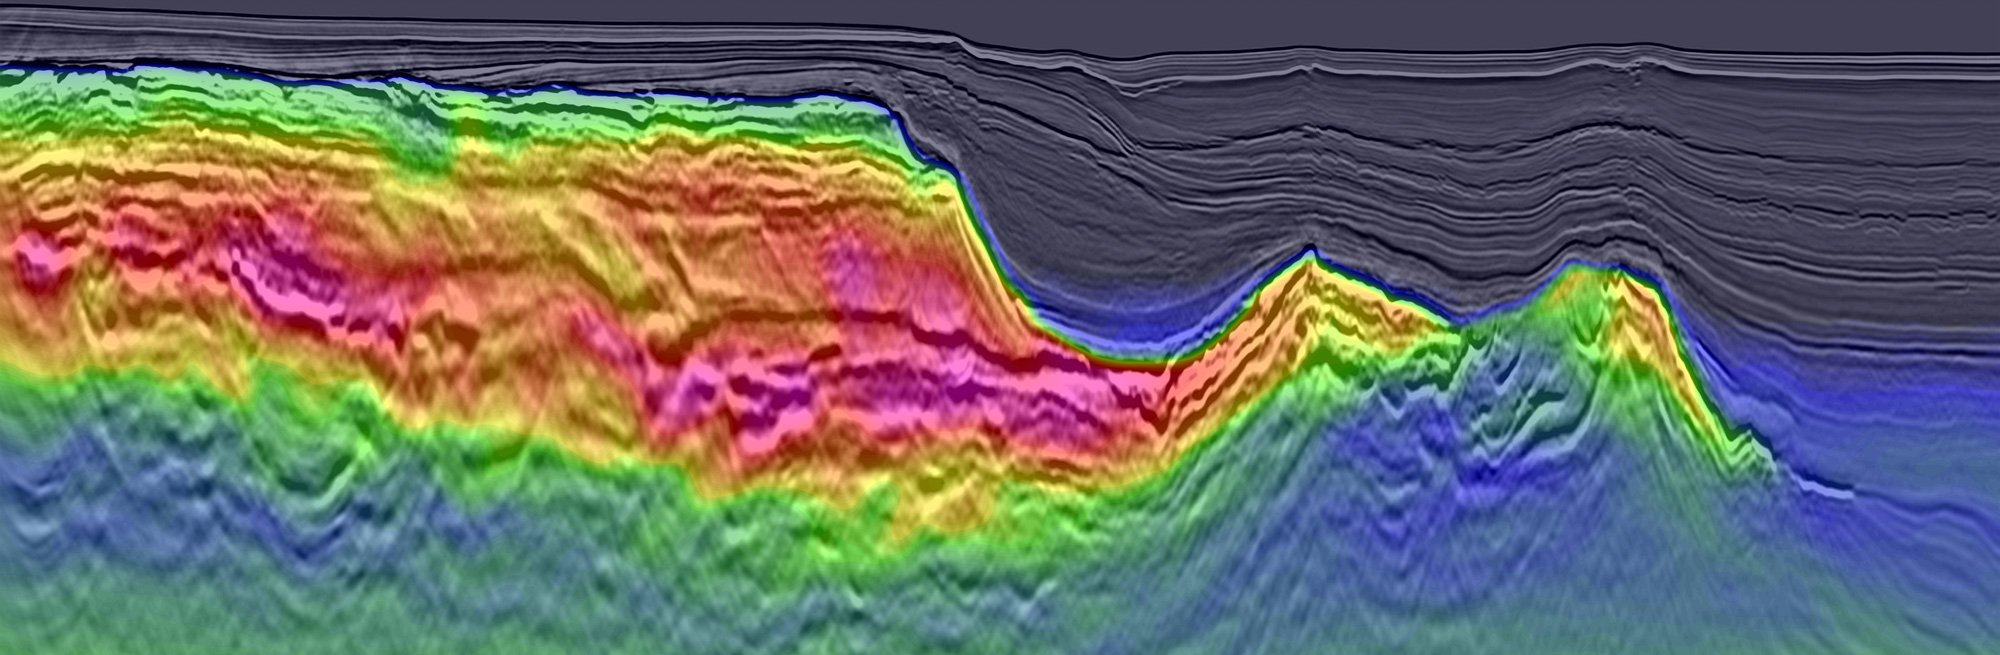 TGS Atlantic Margin Data Shows Velocities in Basalt